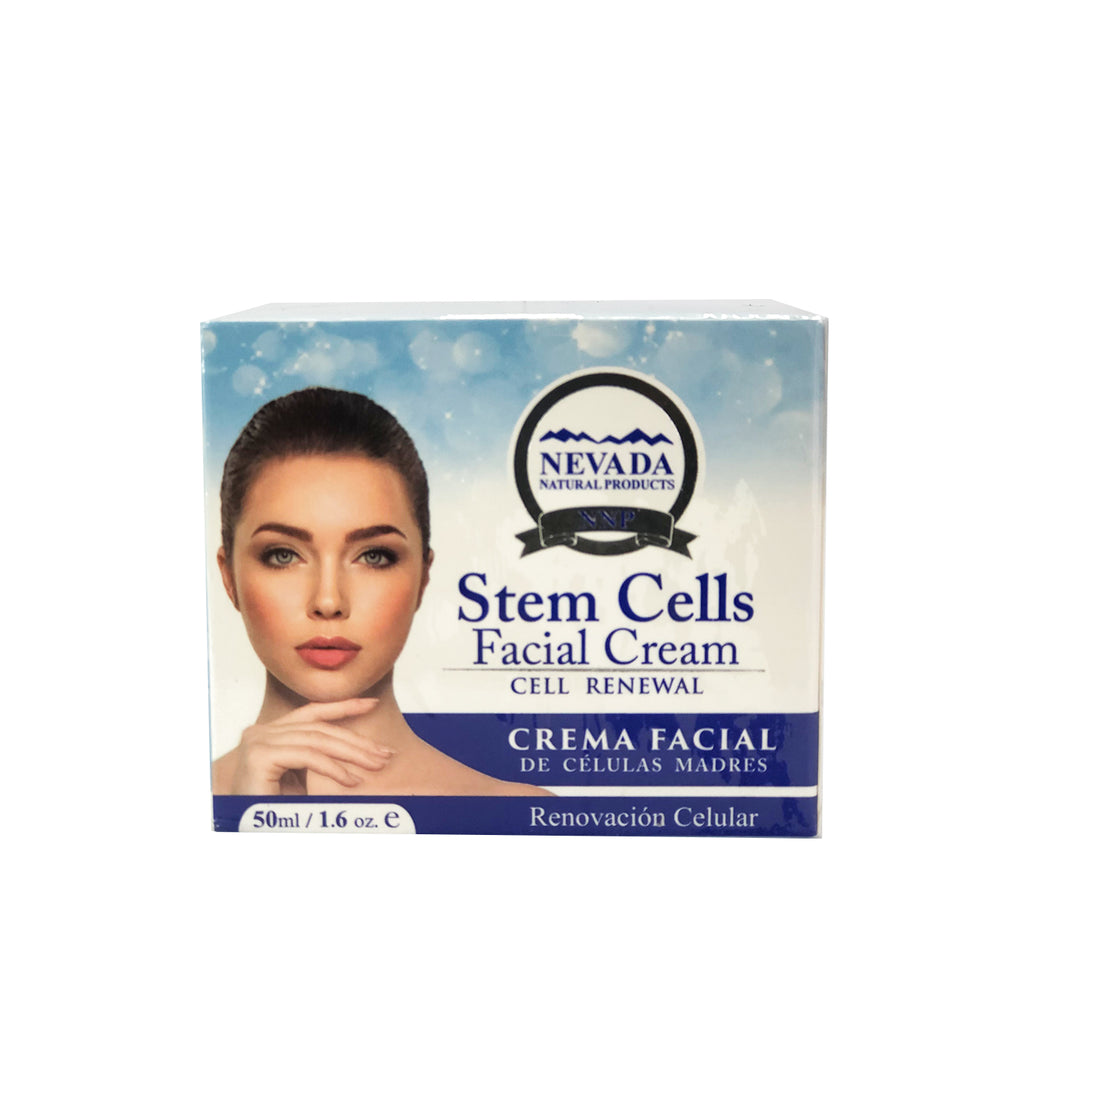 Crema Facial de Celulas Madres - Stem Cells